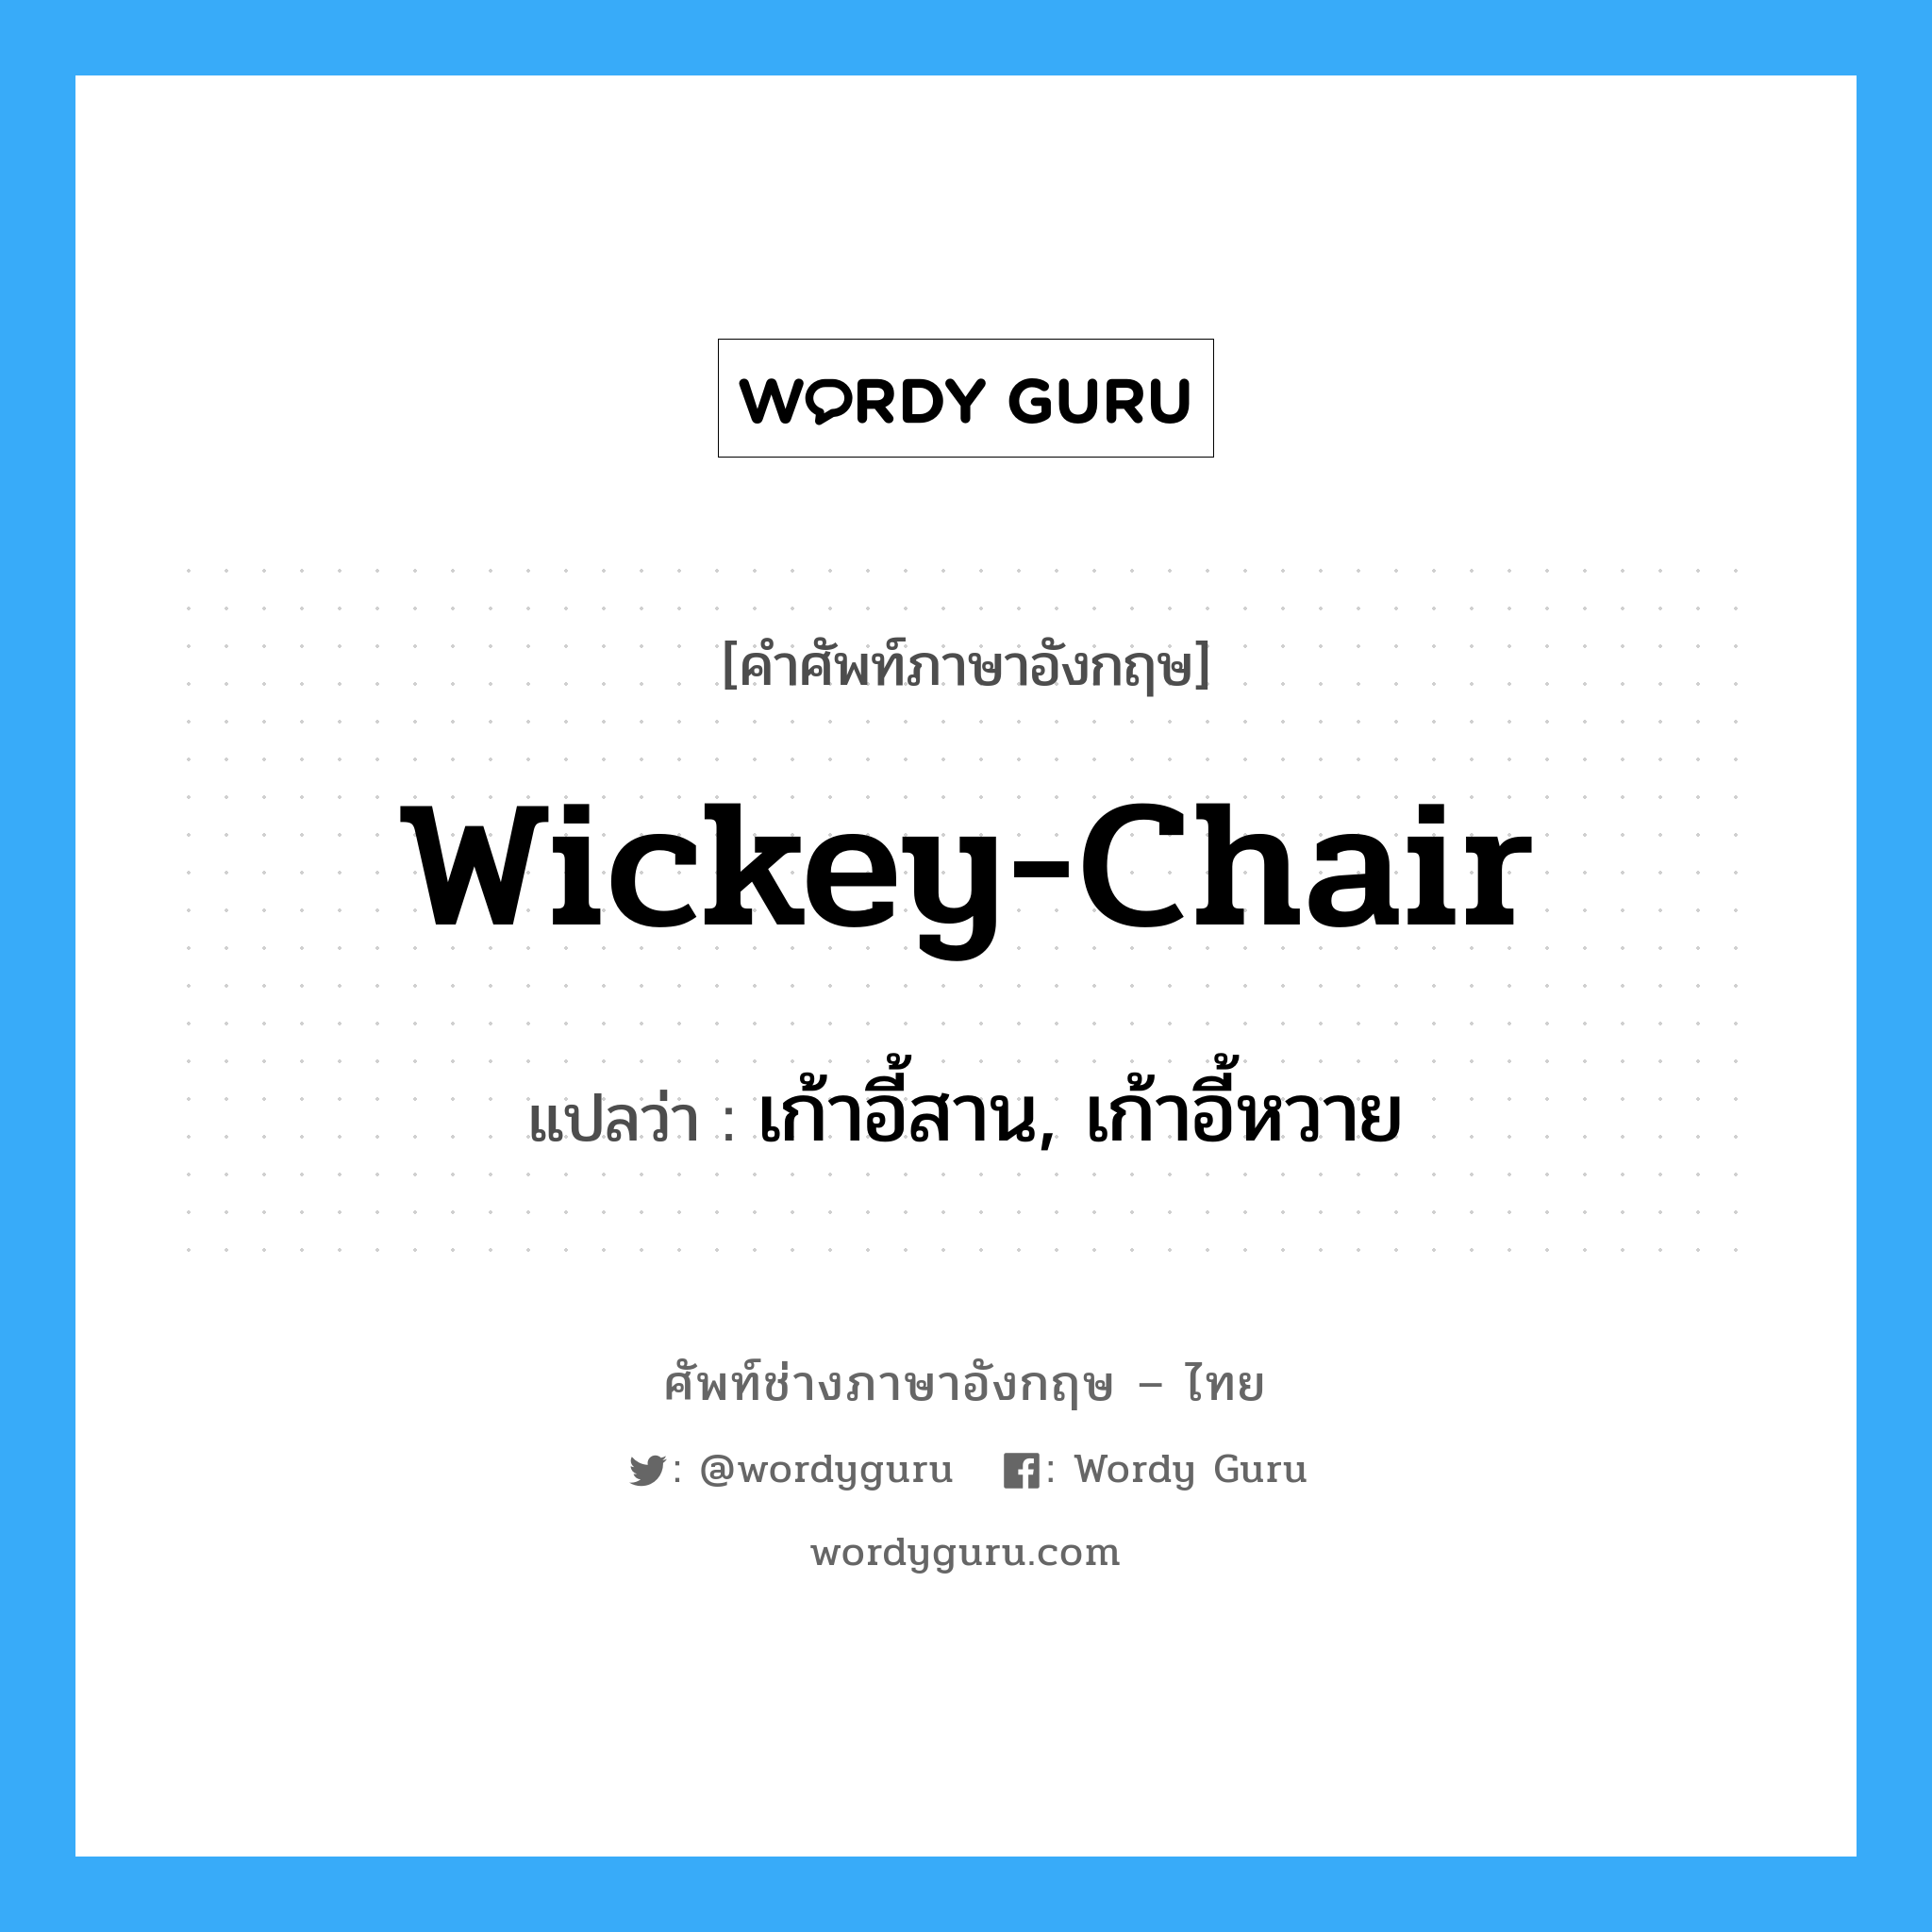 เก้าอี้สาน, เก้าอี้หวาย ภาษาอังกฤษ?, คำศัพท์ช่างภาษาอังกฤษ - ไทย เก้าอี้สาน, เก้าอี้หวาย คำศัพท์ภาษาอังกฤษ เก้าอี้สาน, เก้าอี้หวาย แปลว่า wickey-chair